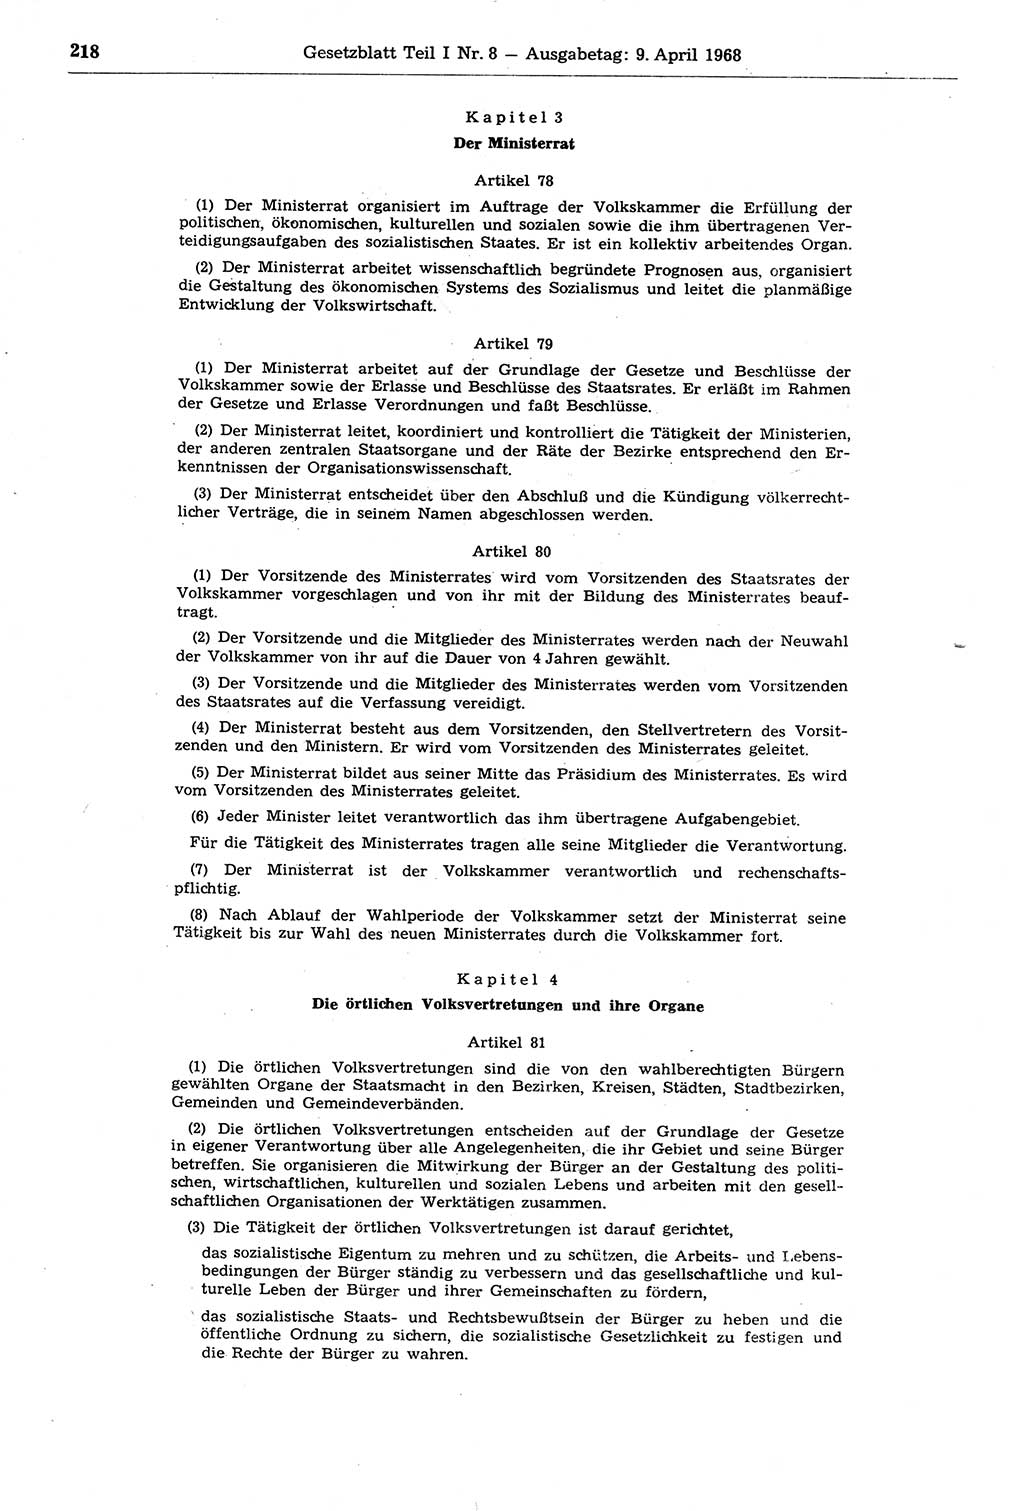 Gesetzblatt (GBl.) der Deutschen Demokratischen Republik (DDR) Teil Ⅰ 1968, Seite 218 (GBl. DDR Ⅰ 1968, S. 218)